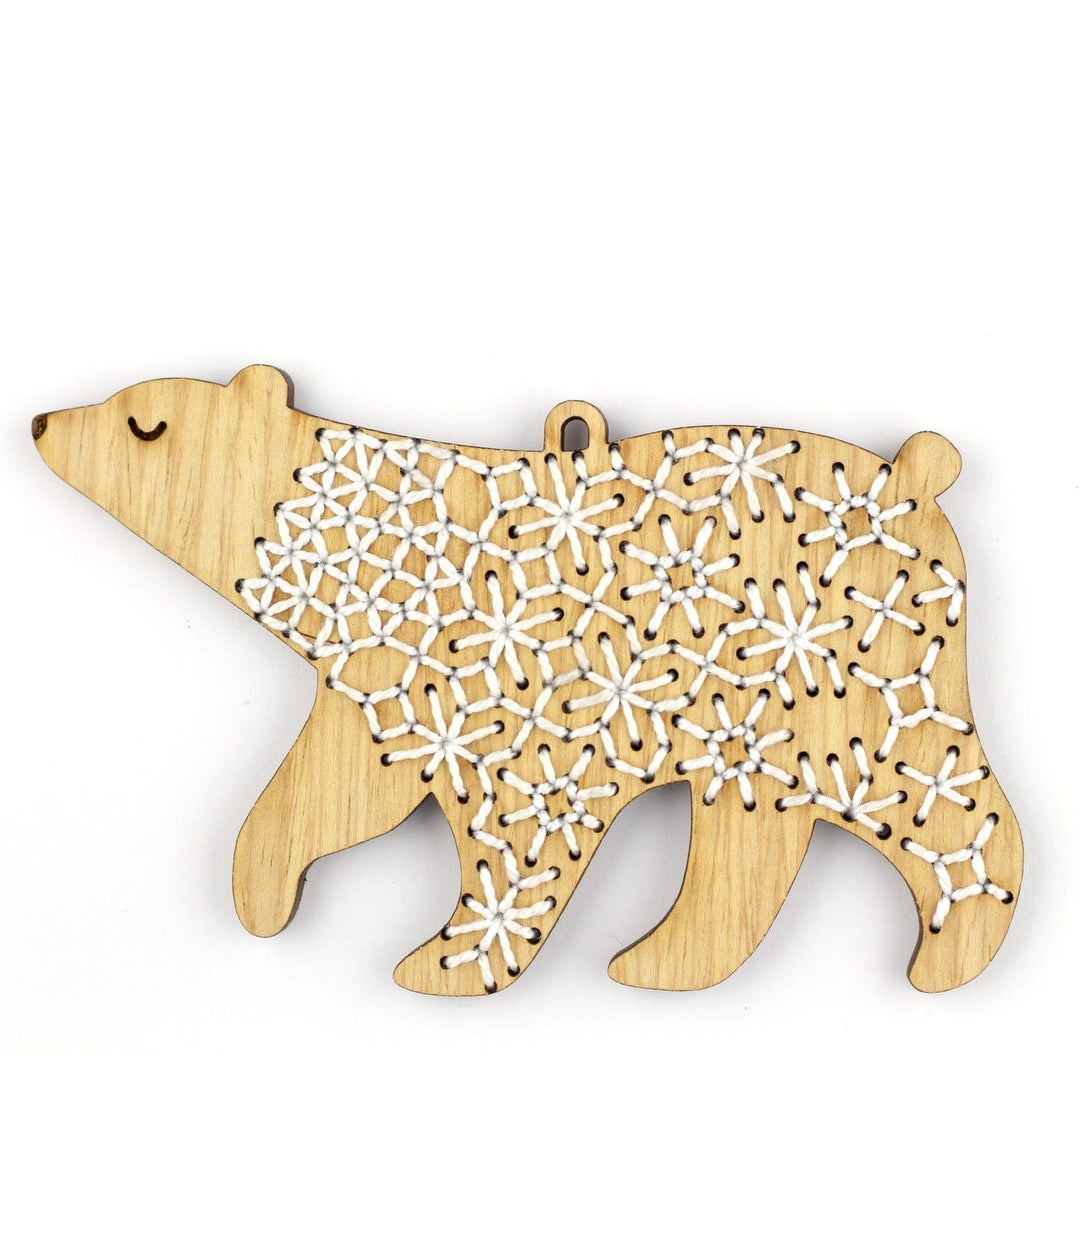 Wooden Bear Stitched Ornament Kit from Kiriki